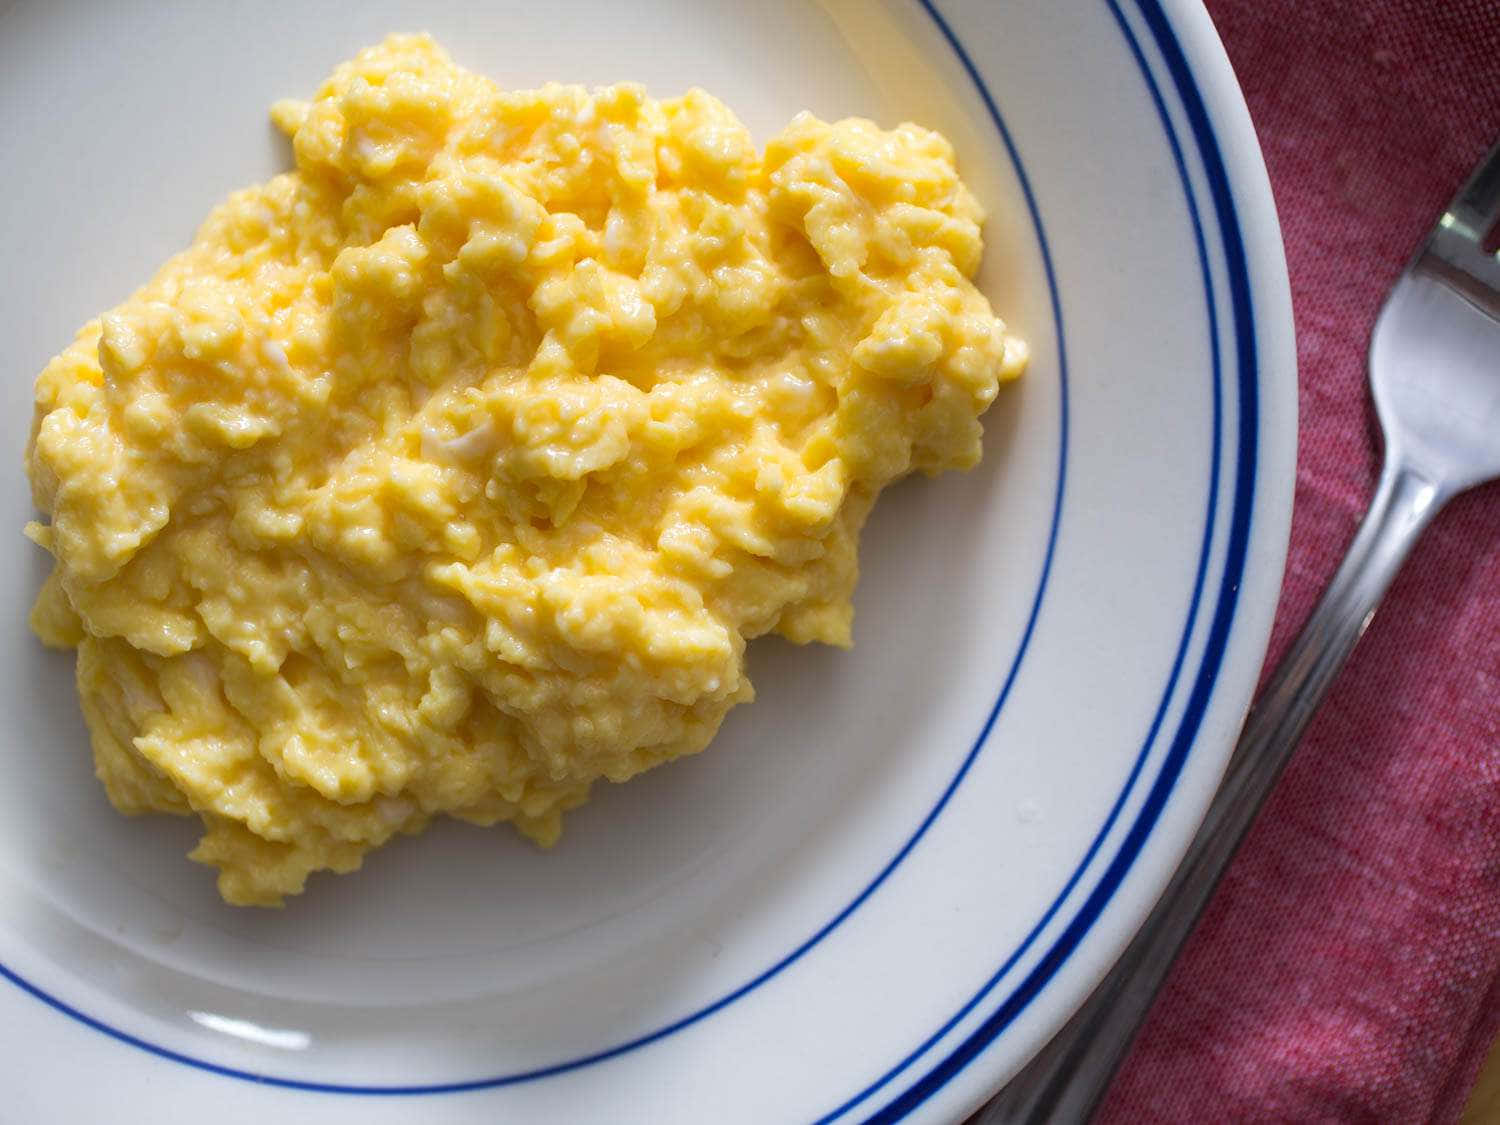 Börjadin Dag Med En God Och Näringsrik Scrambled Eggs-måltid!